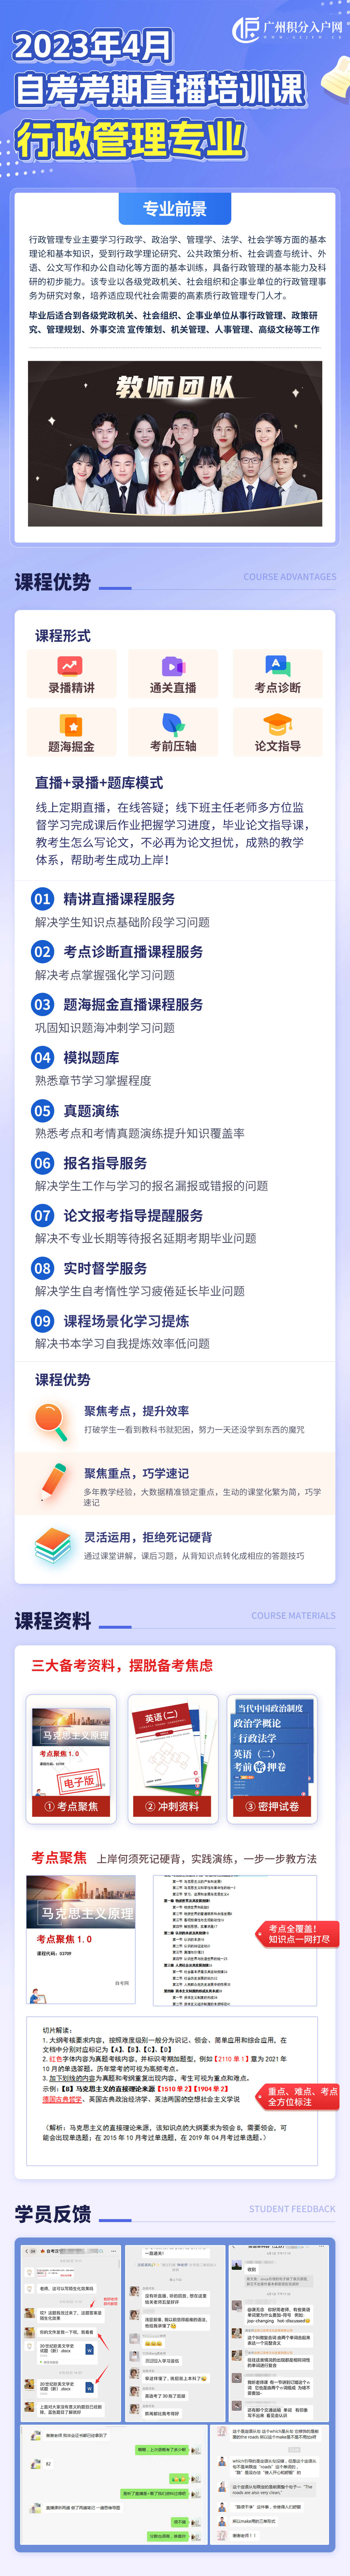 2023年4月广州自学考试网上报名报考须知已公布